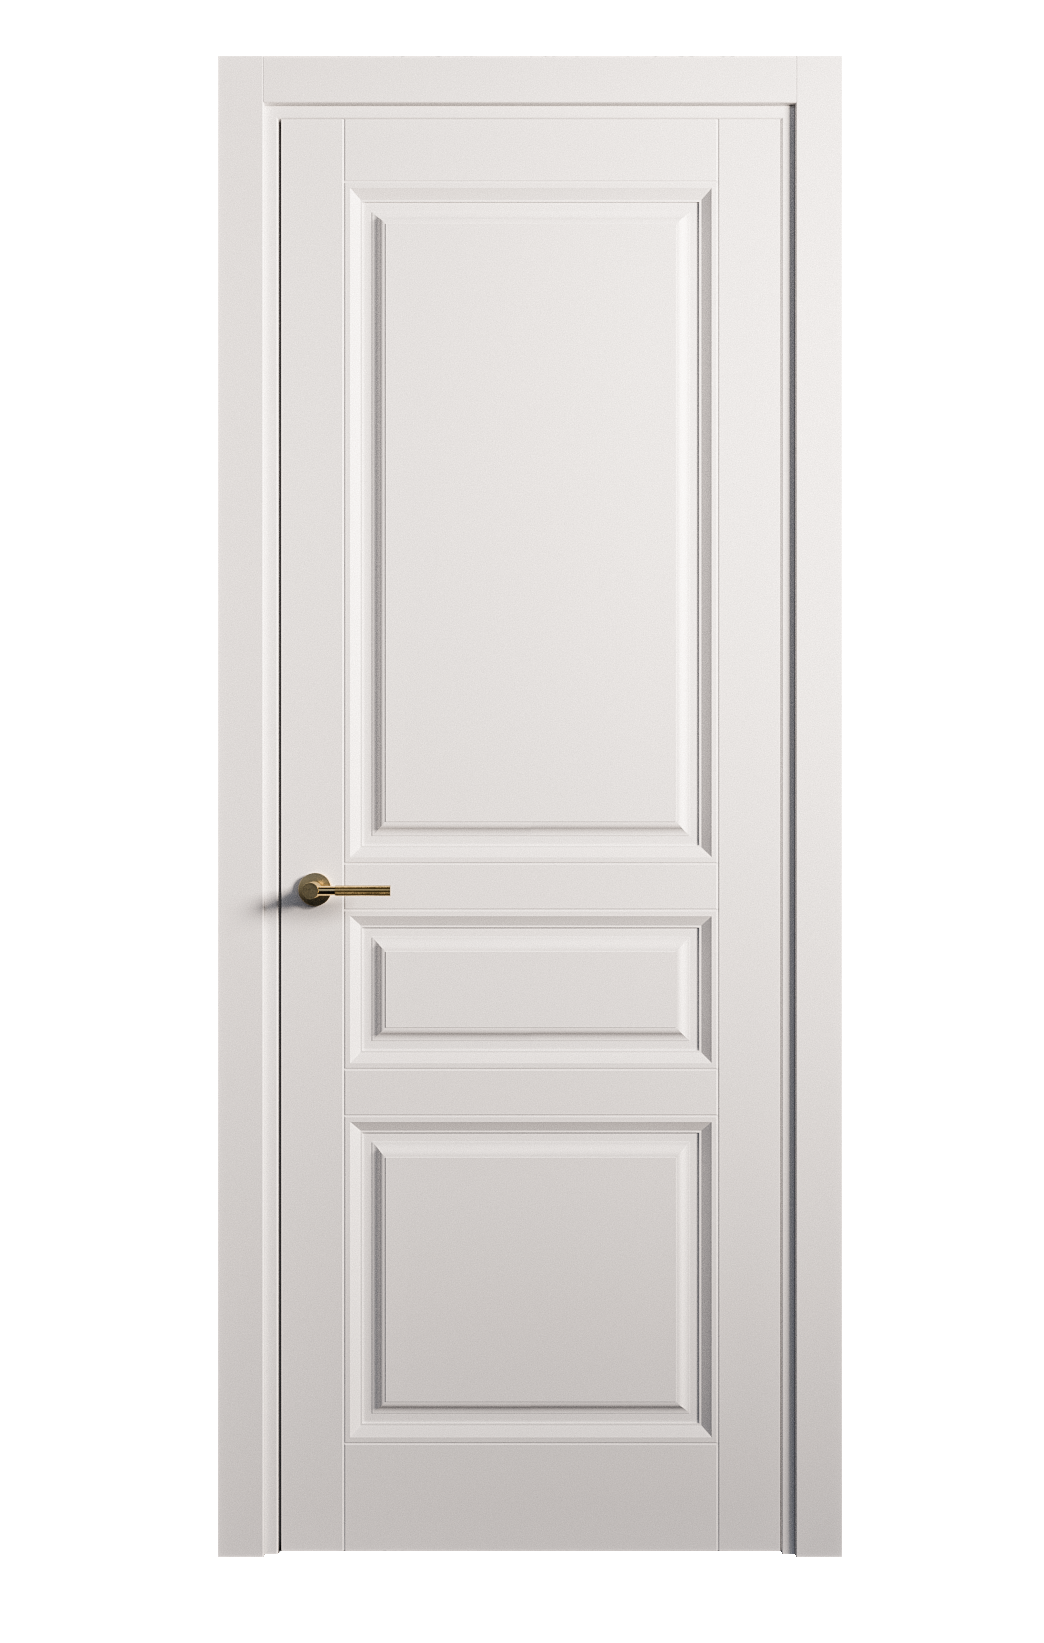 Межкомнатная дверь Venezia-2 глухая эмаль ral 9003 25748